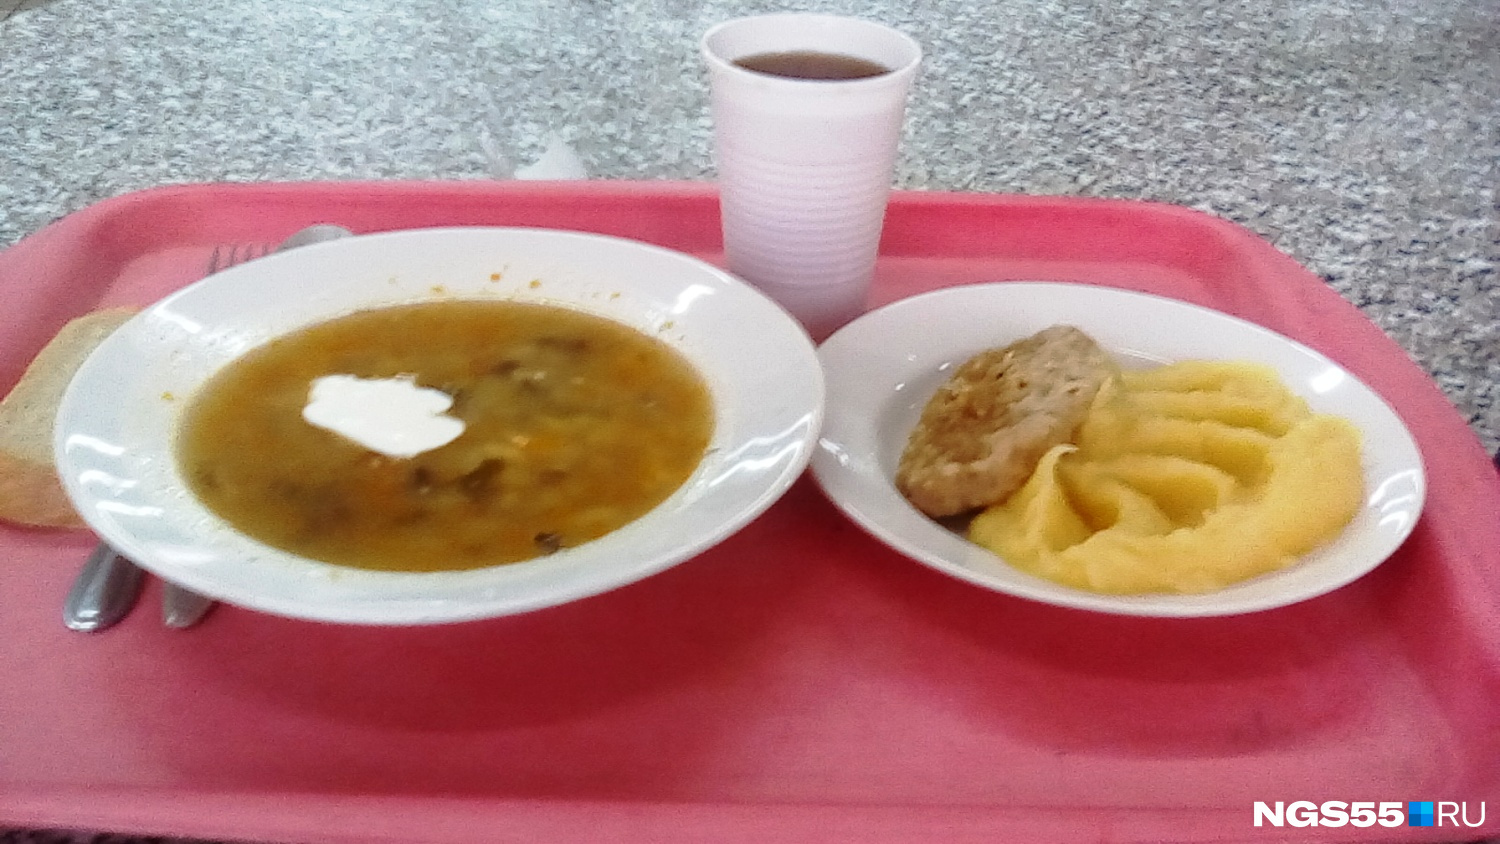 Практически полный боекомплект: на первое — суп с грибами, на второе — котлета «Полтавская» с картошкой, на закуску — хлеб и чай